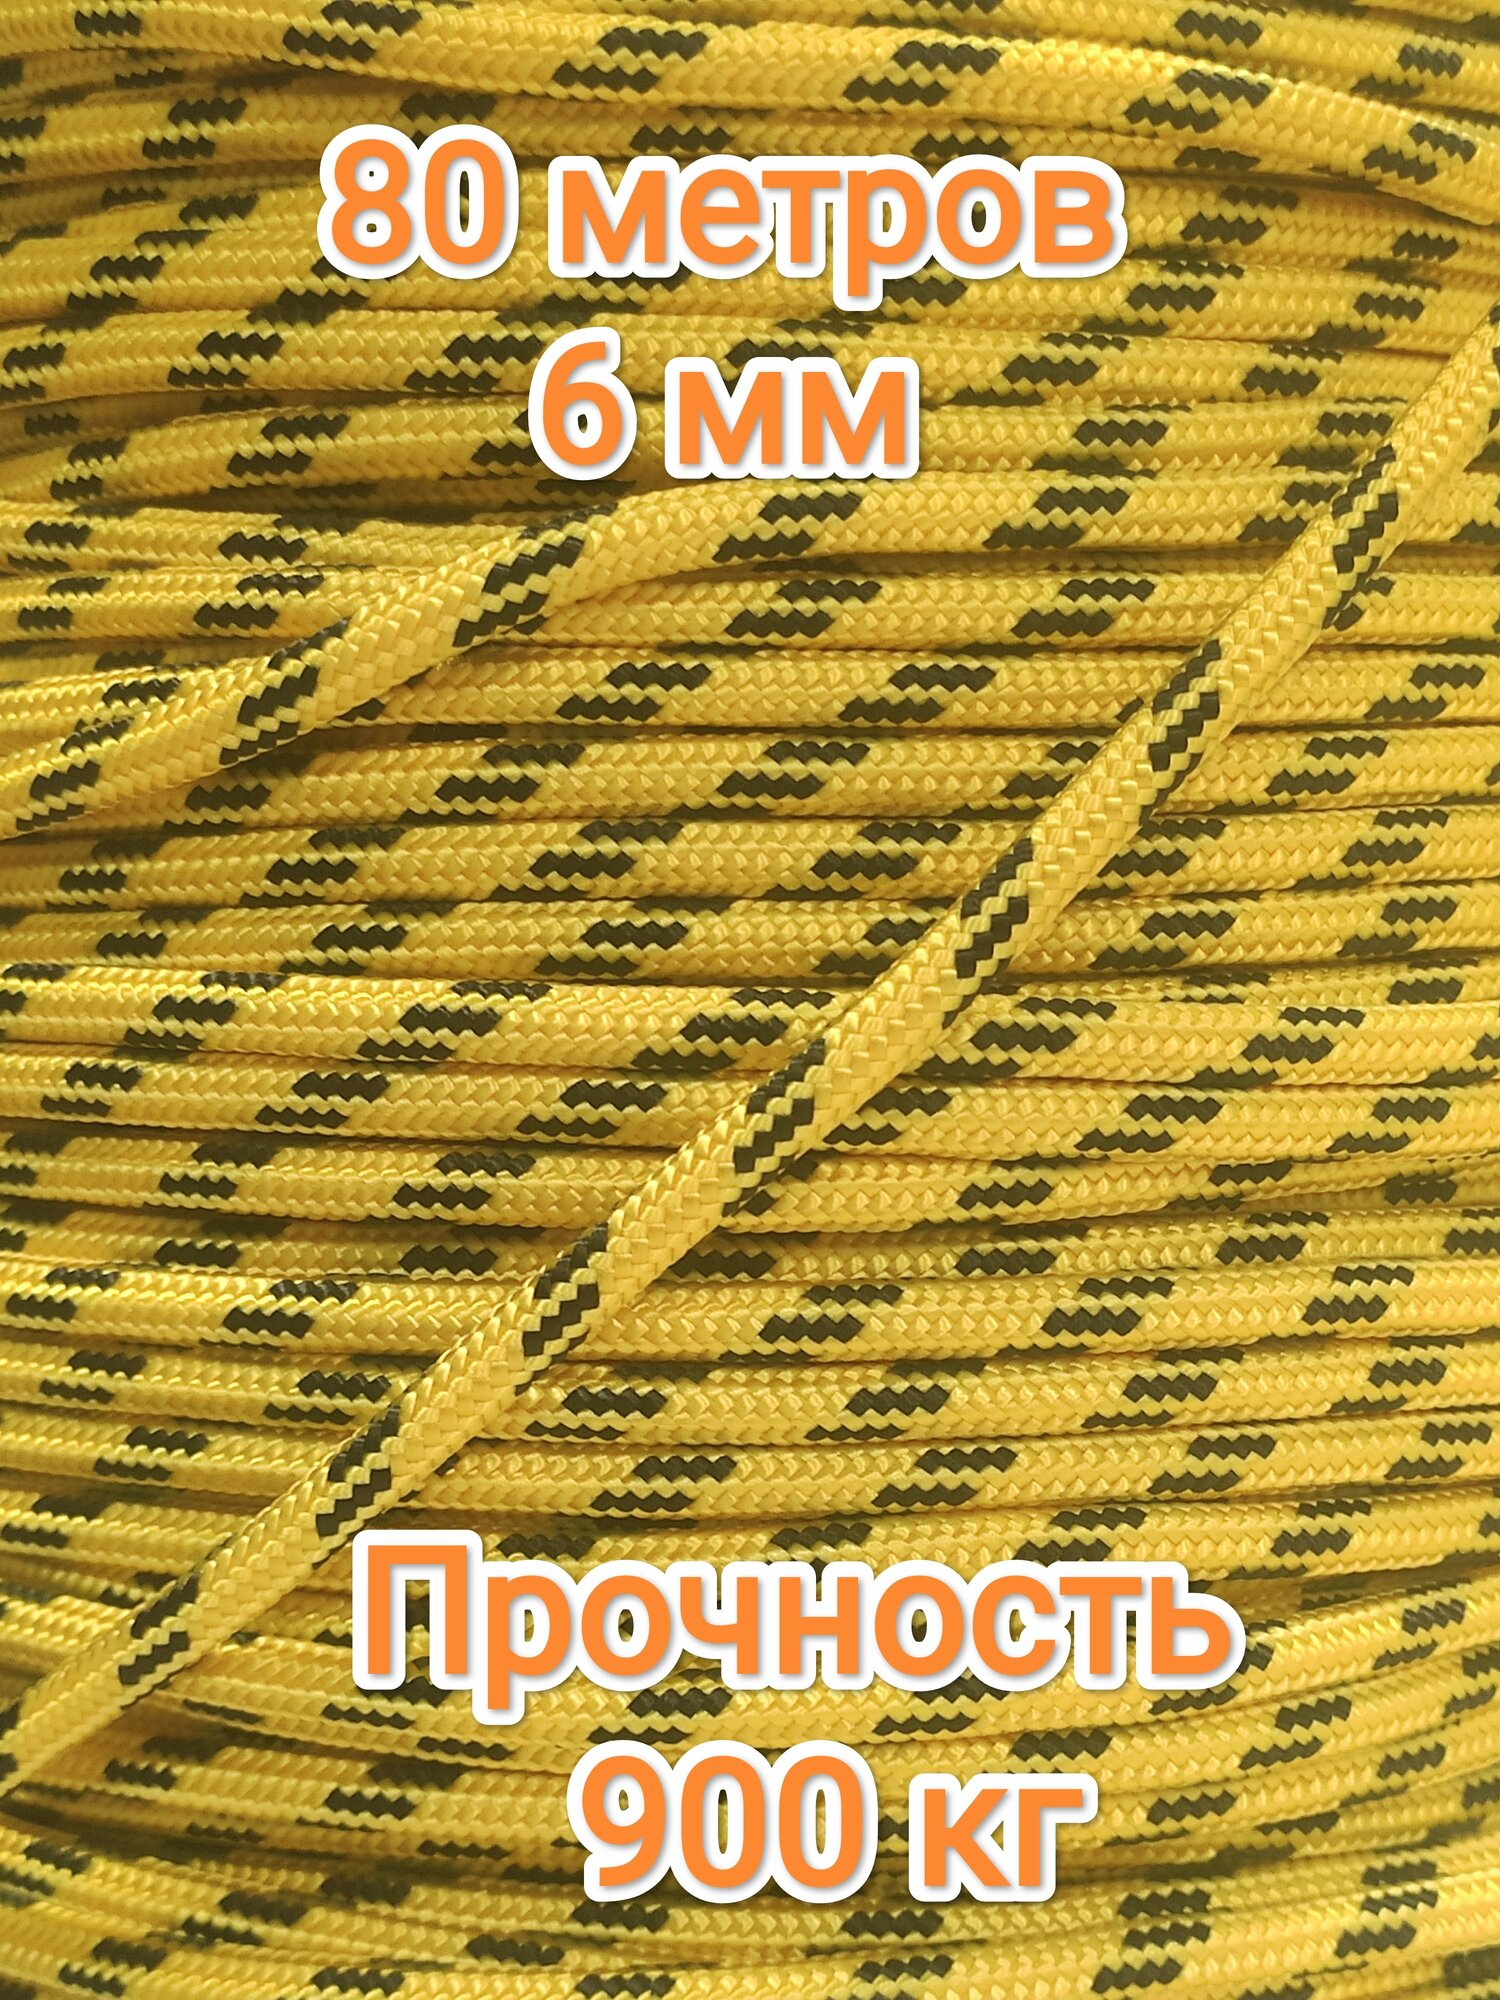 Веревка туристическая 6 мм, прочность 900 кг (80 метров)